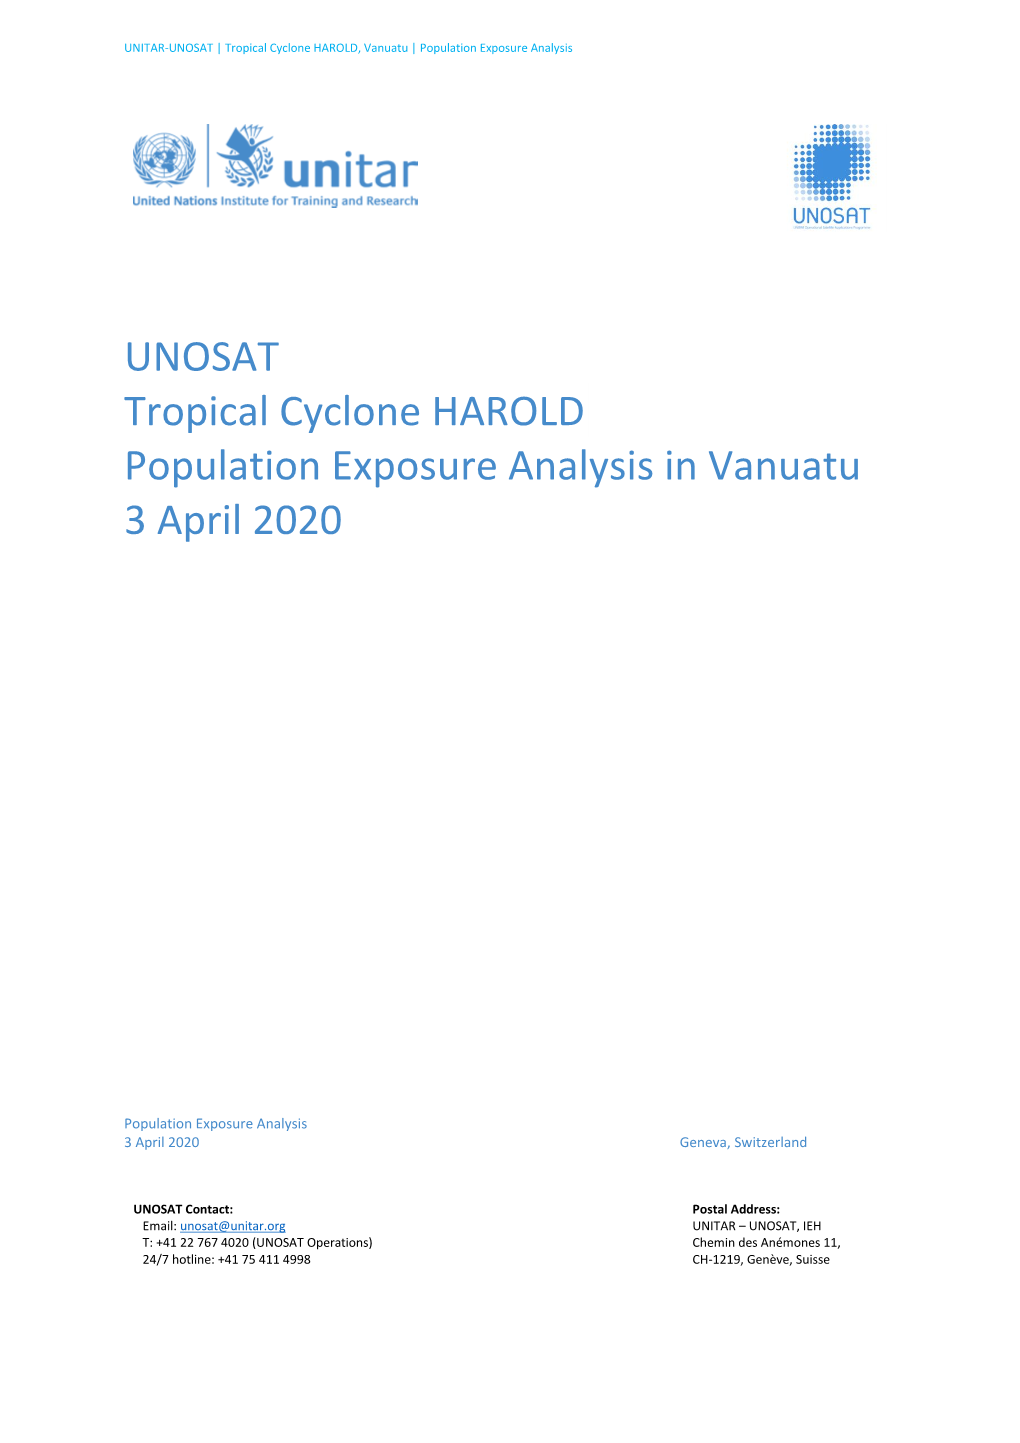 UNOSAT Tropical Cyclone HAROLD Population Exposure Analysis in Vanuatu 3 April 2020